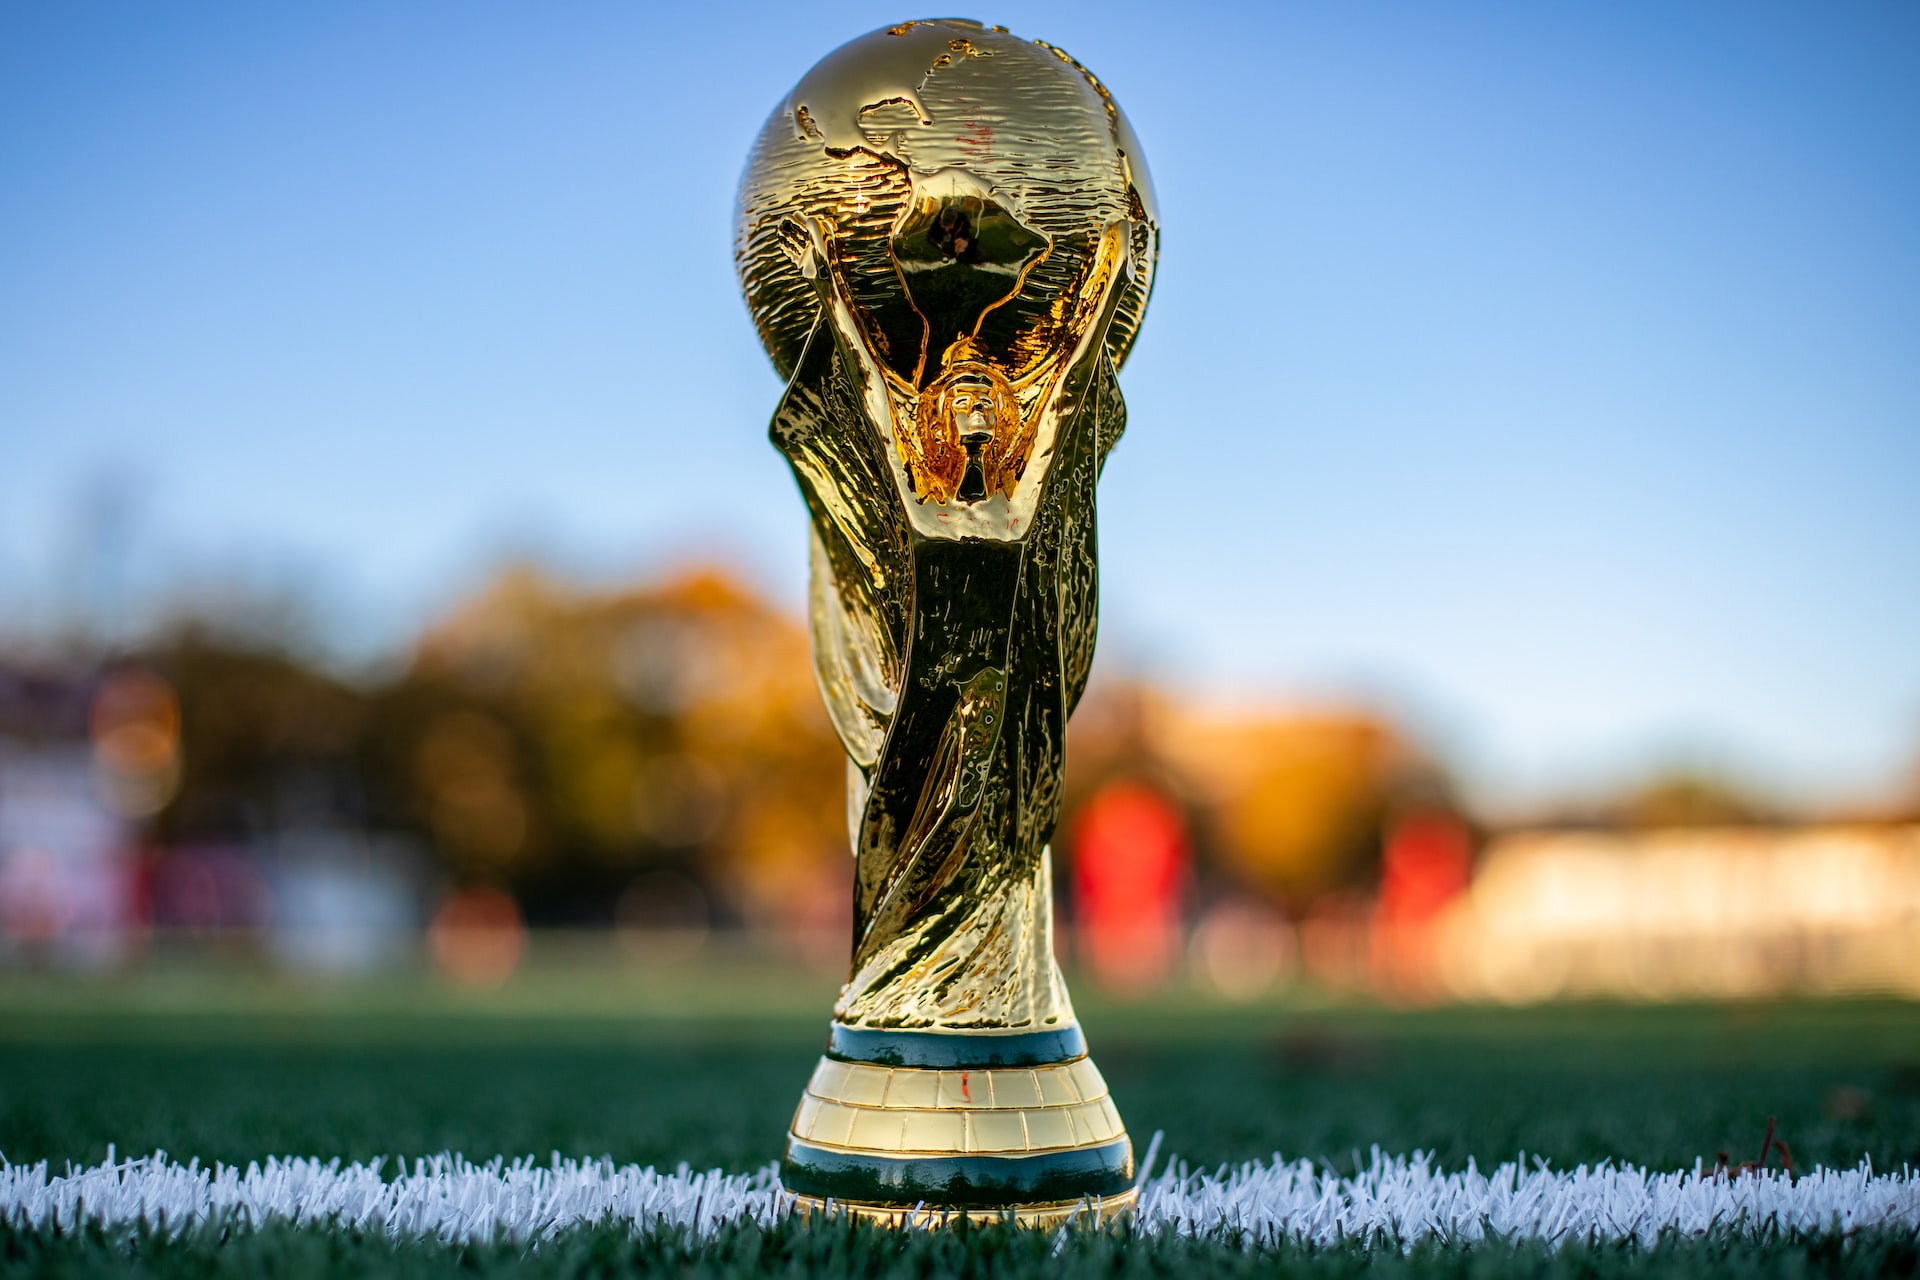 Fifa Mobile recebe atualização que traz a Copa do Mundo para os